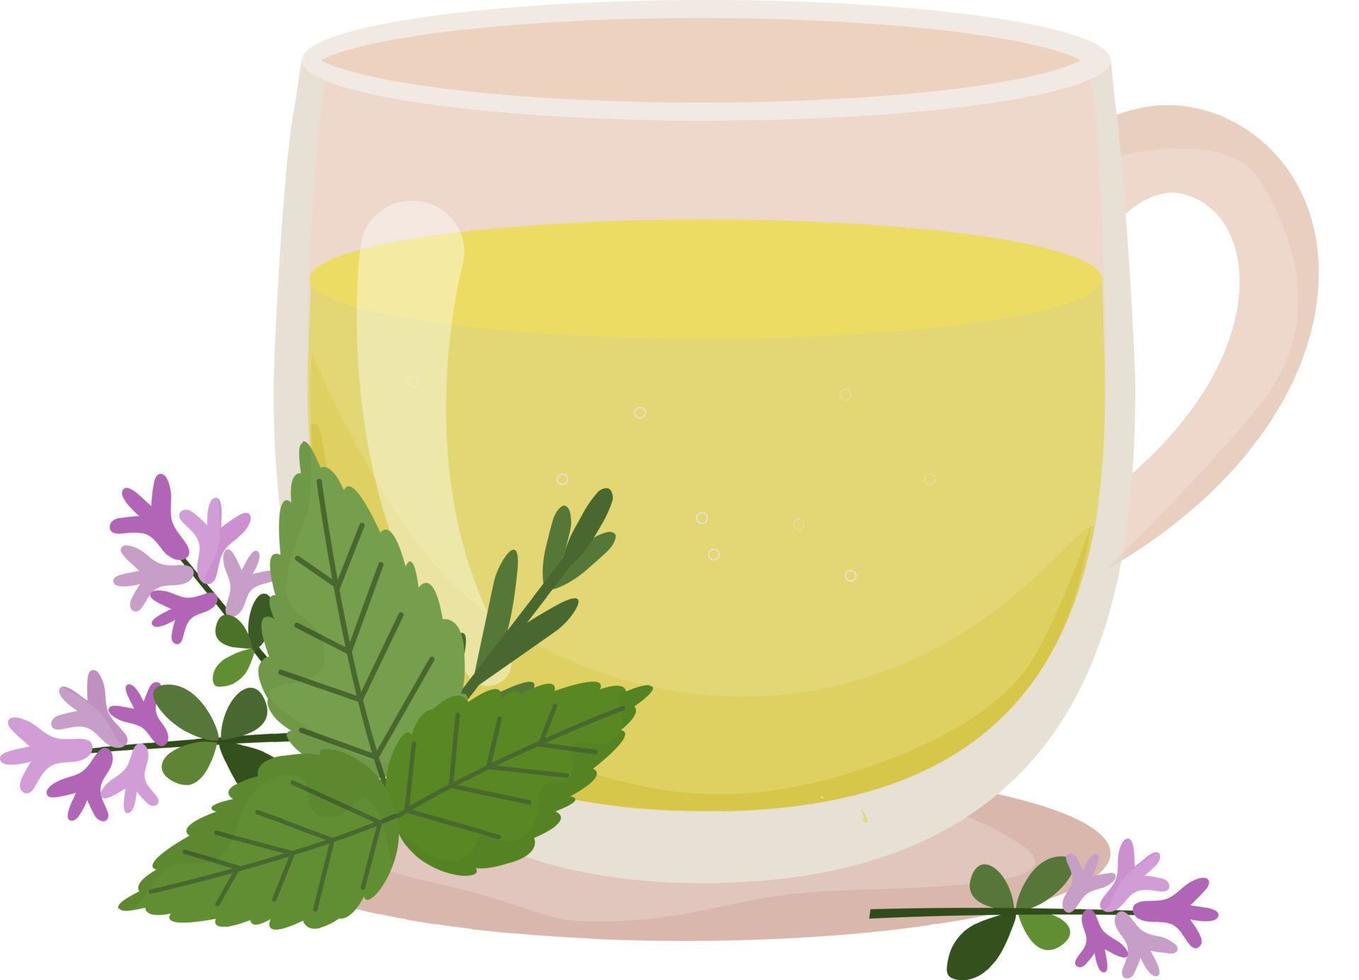 té de hierbas. taza de té con tomillo y menta. taza transparente con té y decoración floral. bebida caliente. cuidado de la salud. tratamiento homeopático. Ilustración vectorial sobre fondo blanco. vector